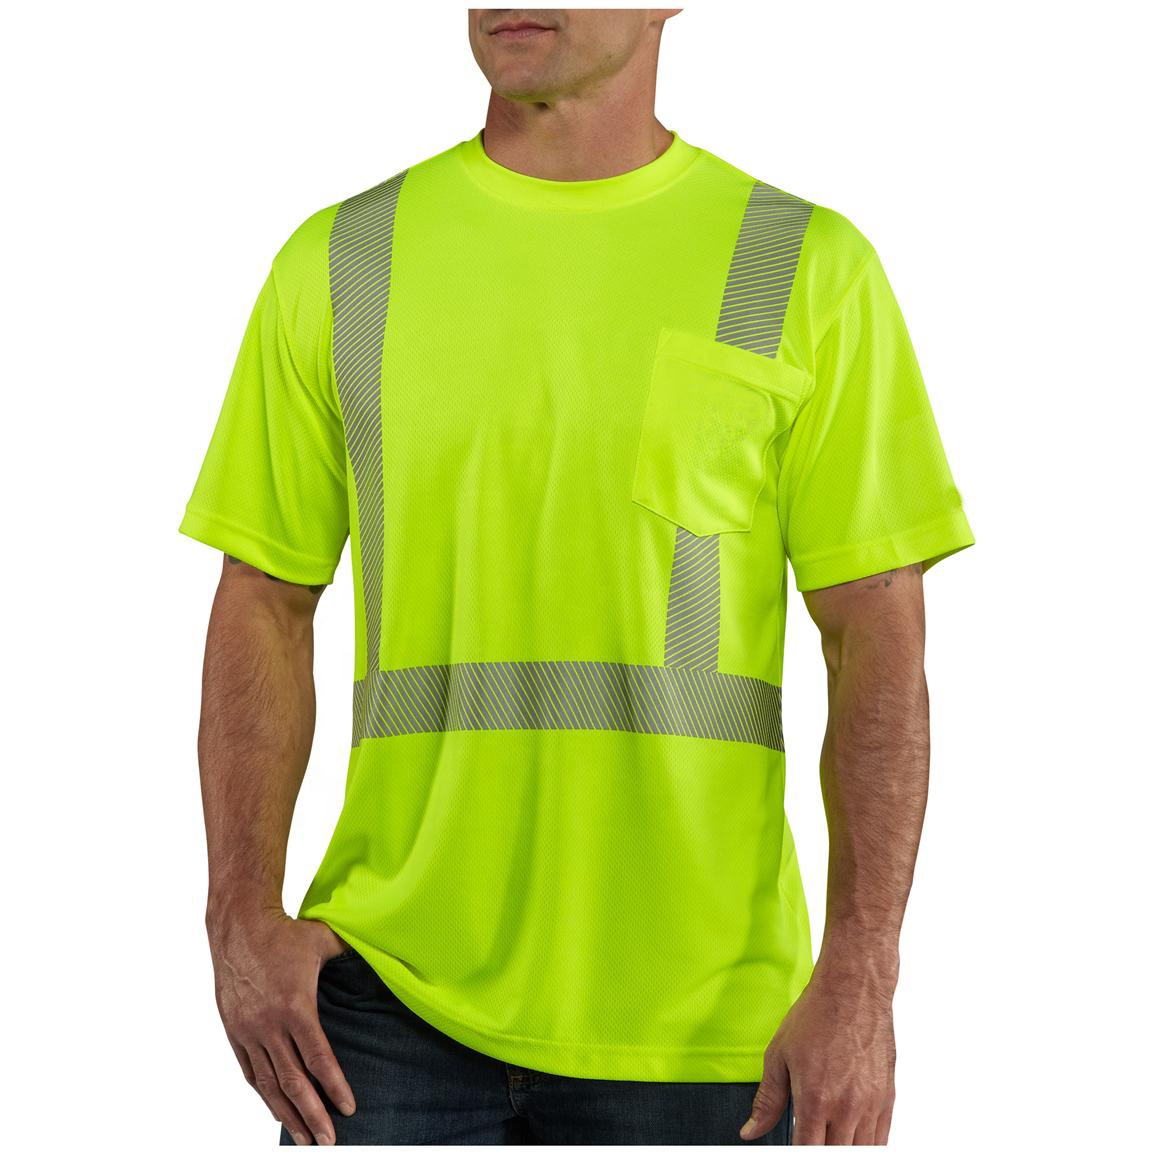 बल्क बिक्री सुरक्षा रिफ्लेक्टिभ कपडा कामदारको लुगा समर फास्ट ड्राई स्पोर्ट्स प्लस साइज पुरुष टी-शर्ट हाई विस रिफ्लेक्टिभ स्ट्राइप